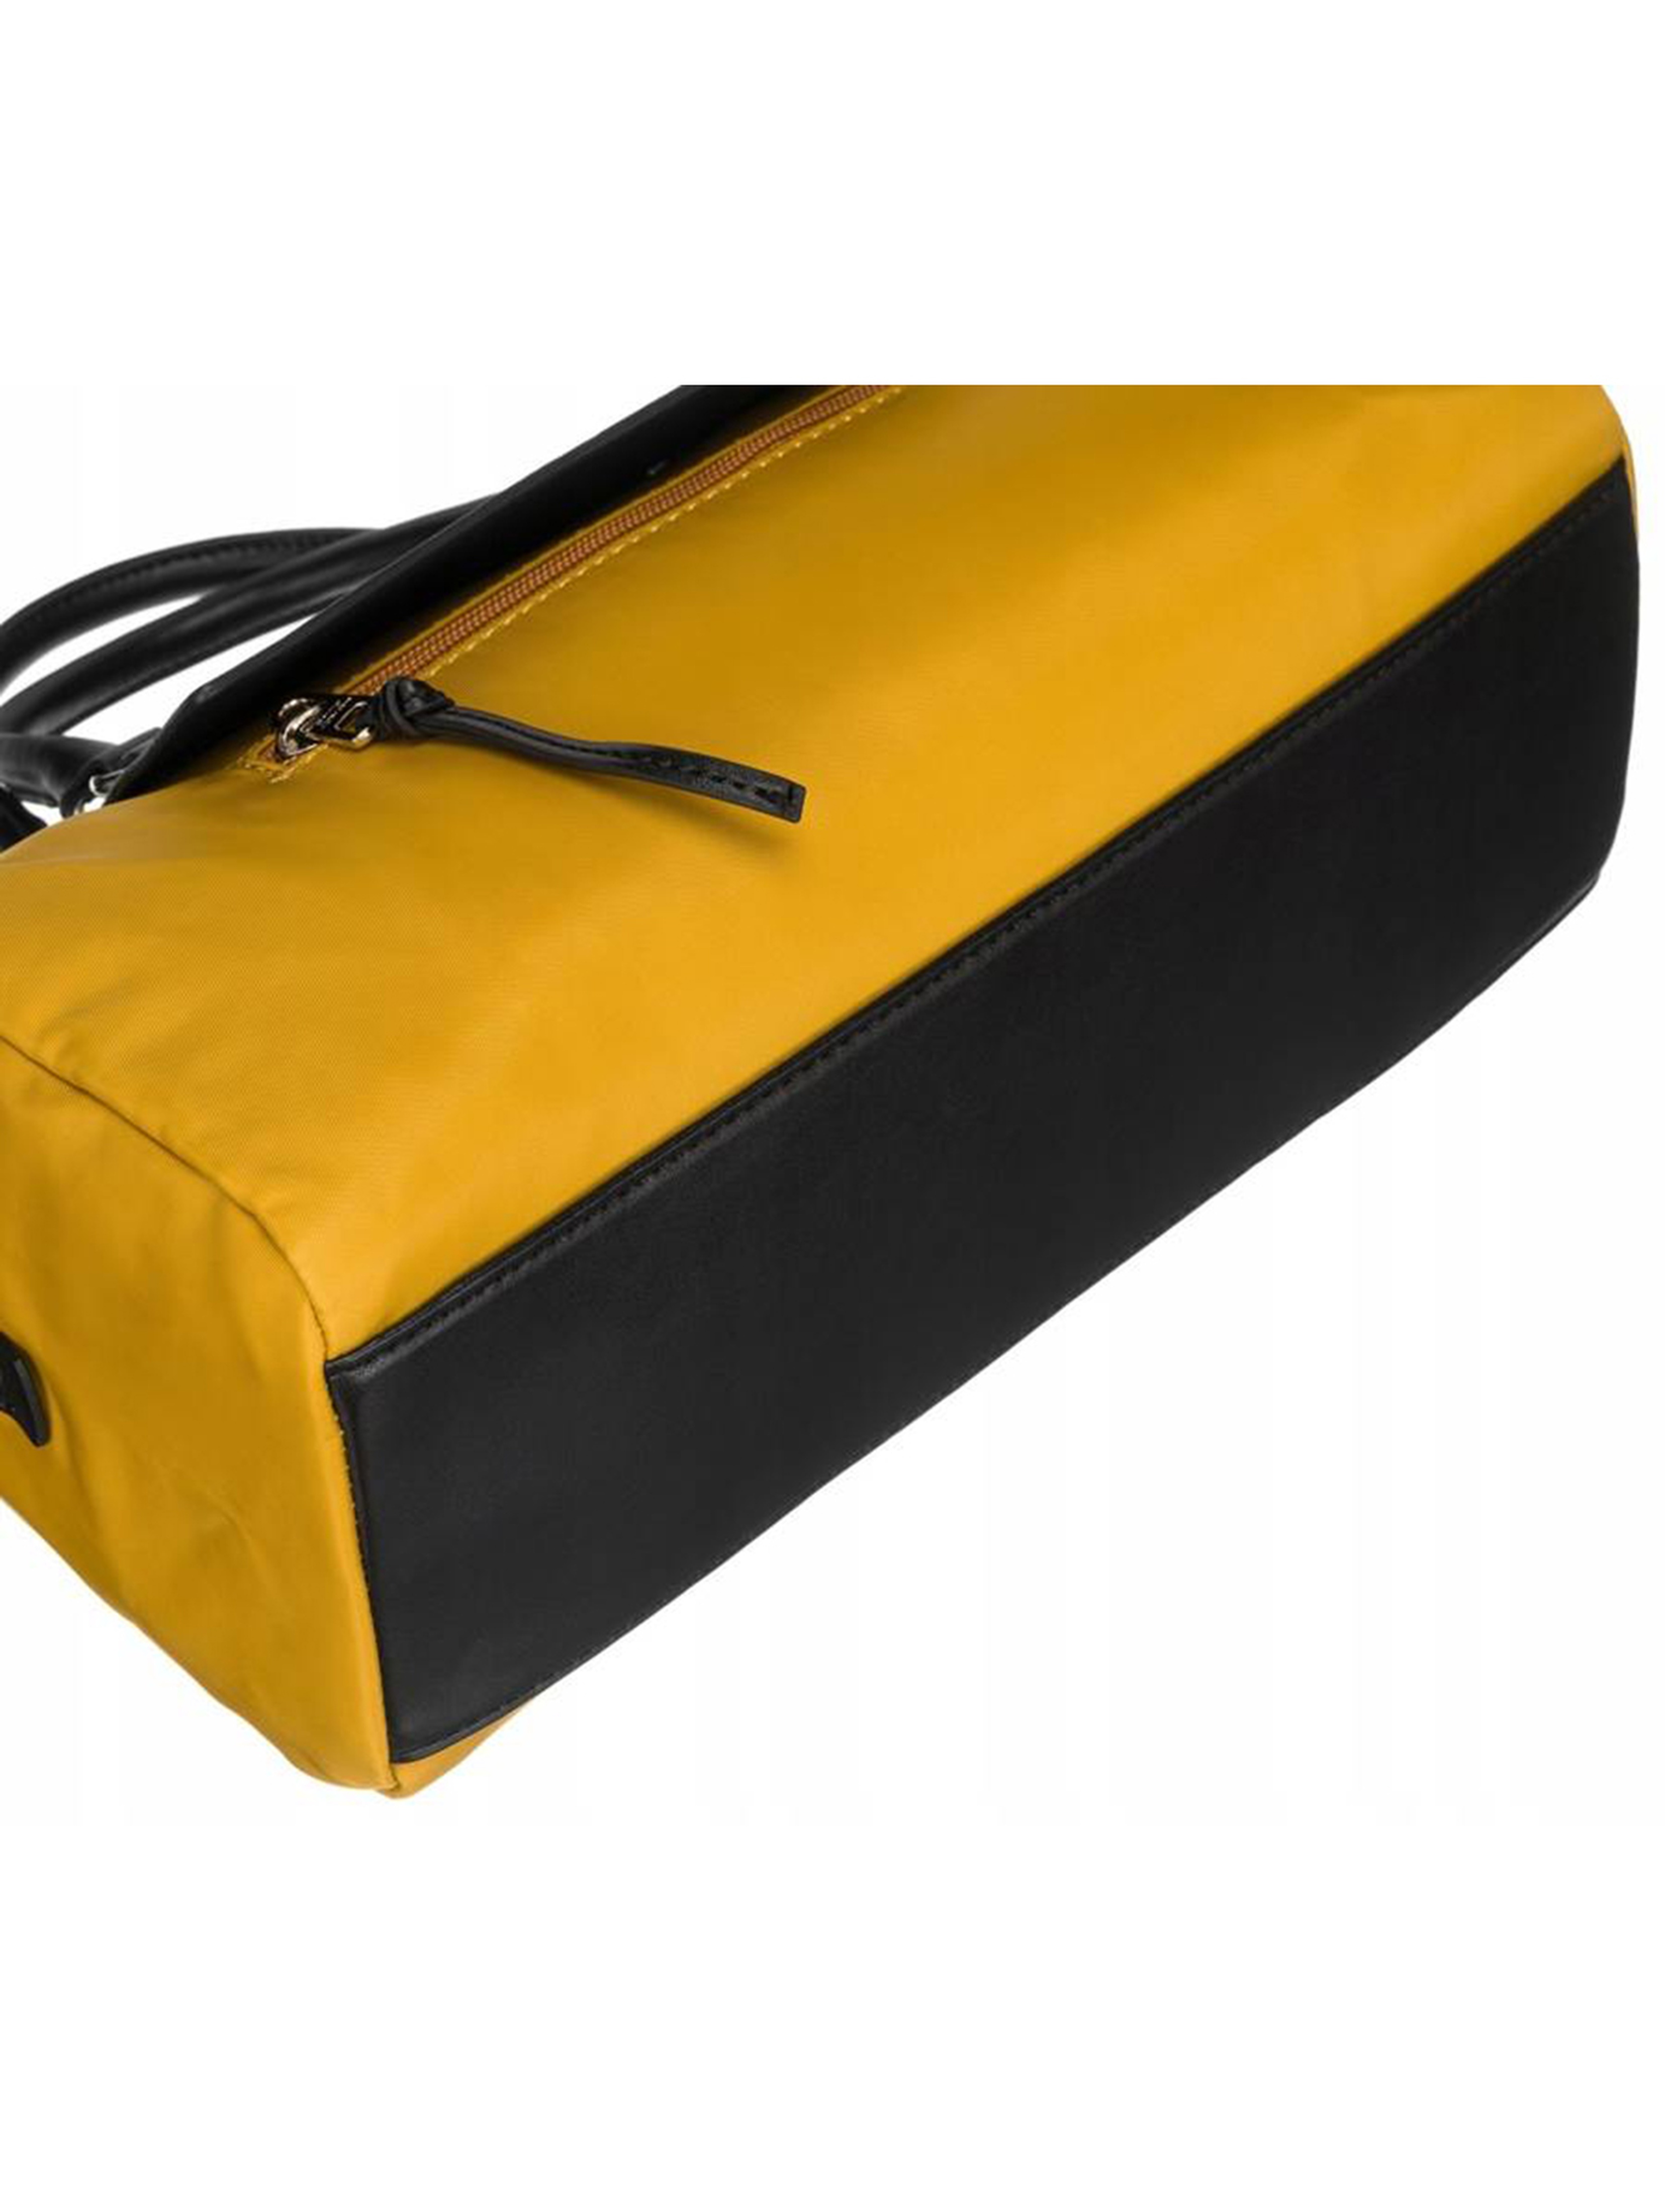 Poręczna, miejska torebka w kształcie bagietki — David Jones żółta